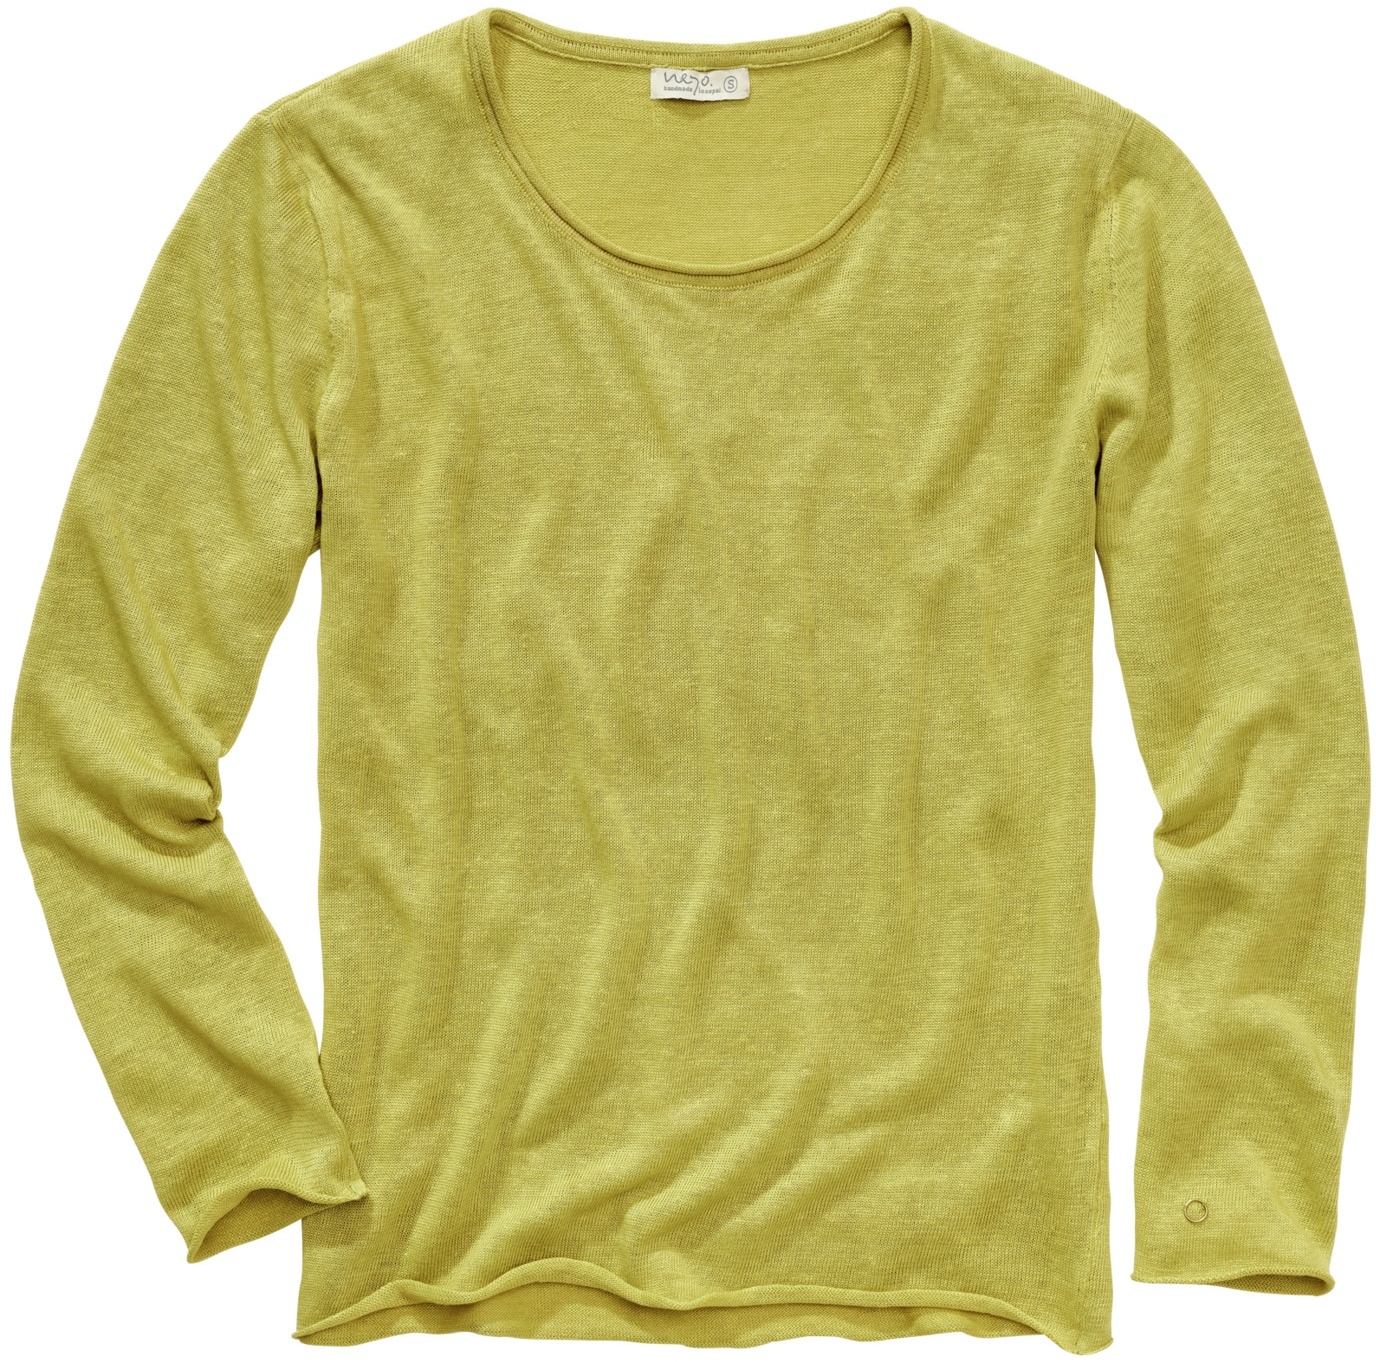 Neyo Herren Sweater Regular Fit Gelb einfarbig - XXL